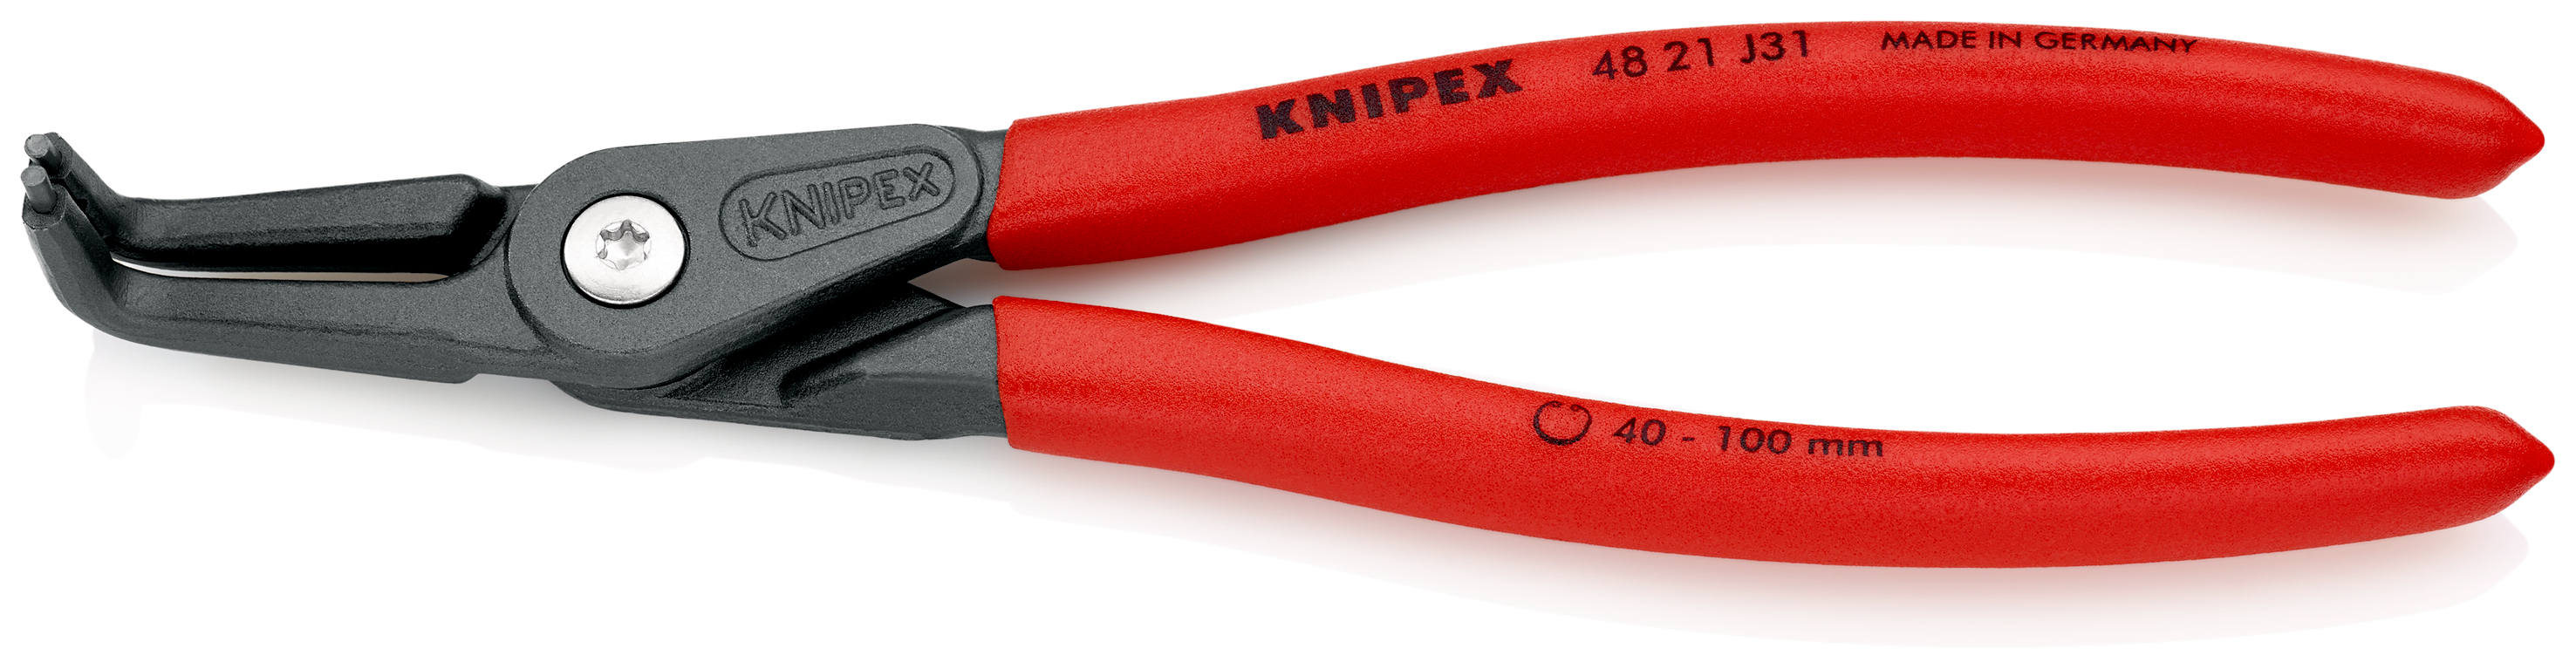 Knipex 4821J31 Cleste pentru inele de siguranta de interior, lungime 210 mm